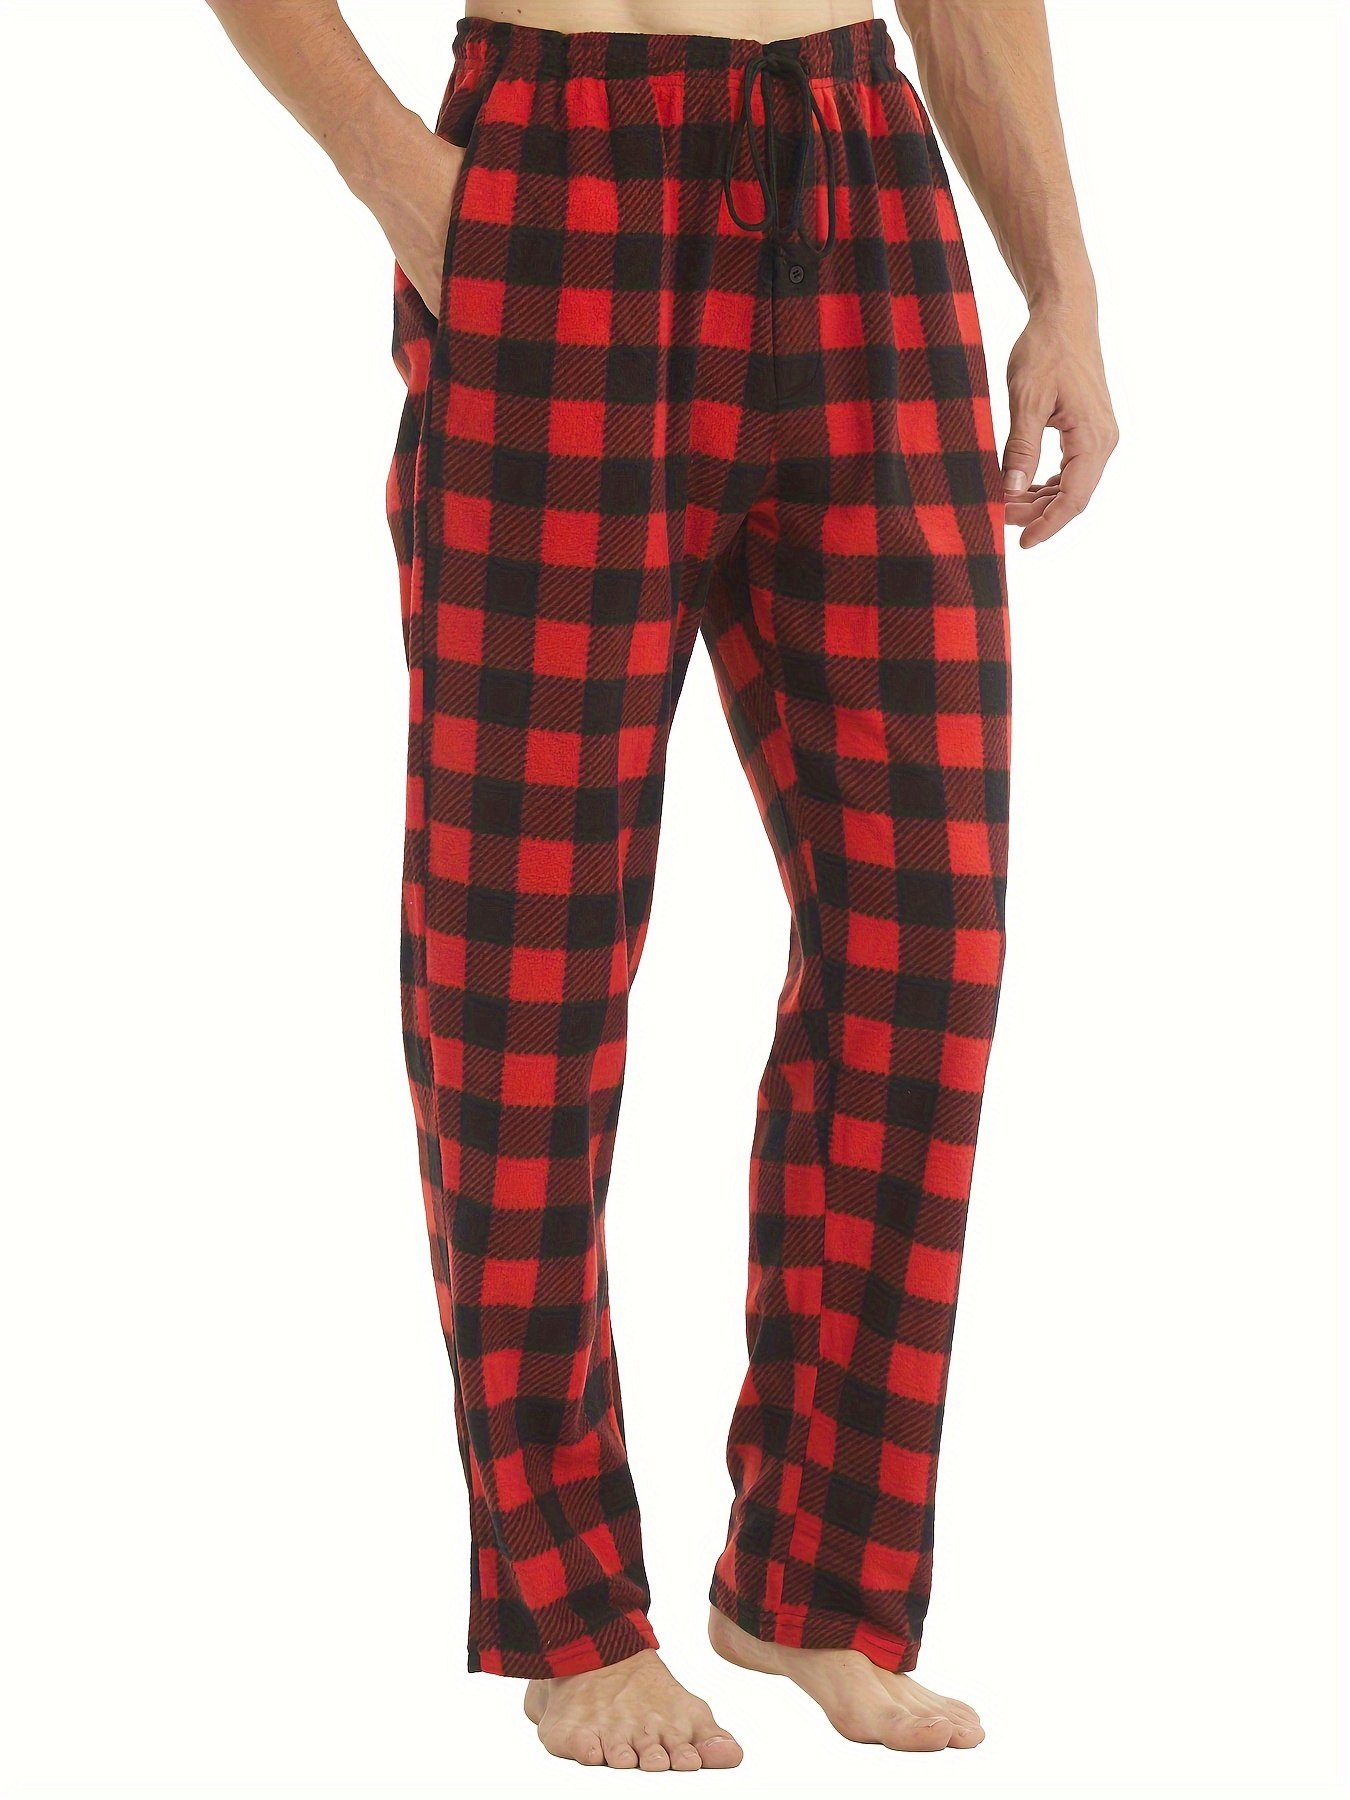 Pantalón de Pijama Hombre de Algodón a cuadros Rojo y Blanco Invierno  -Primavera - Suelto y cómodo.